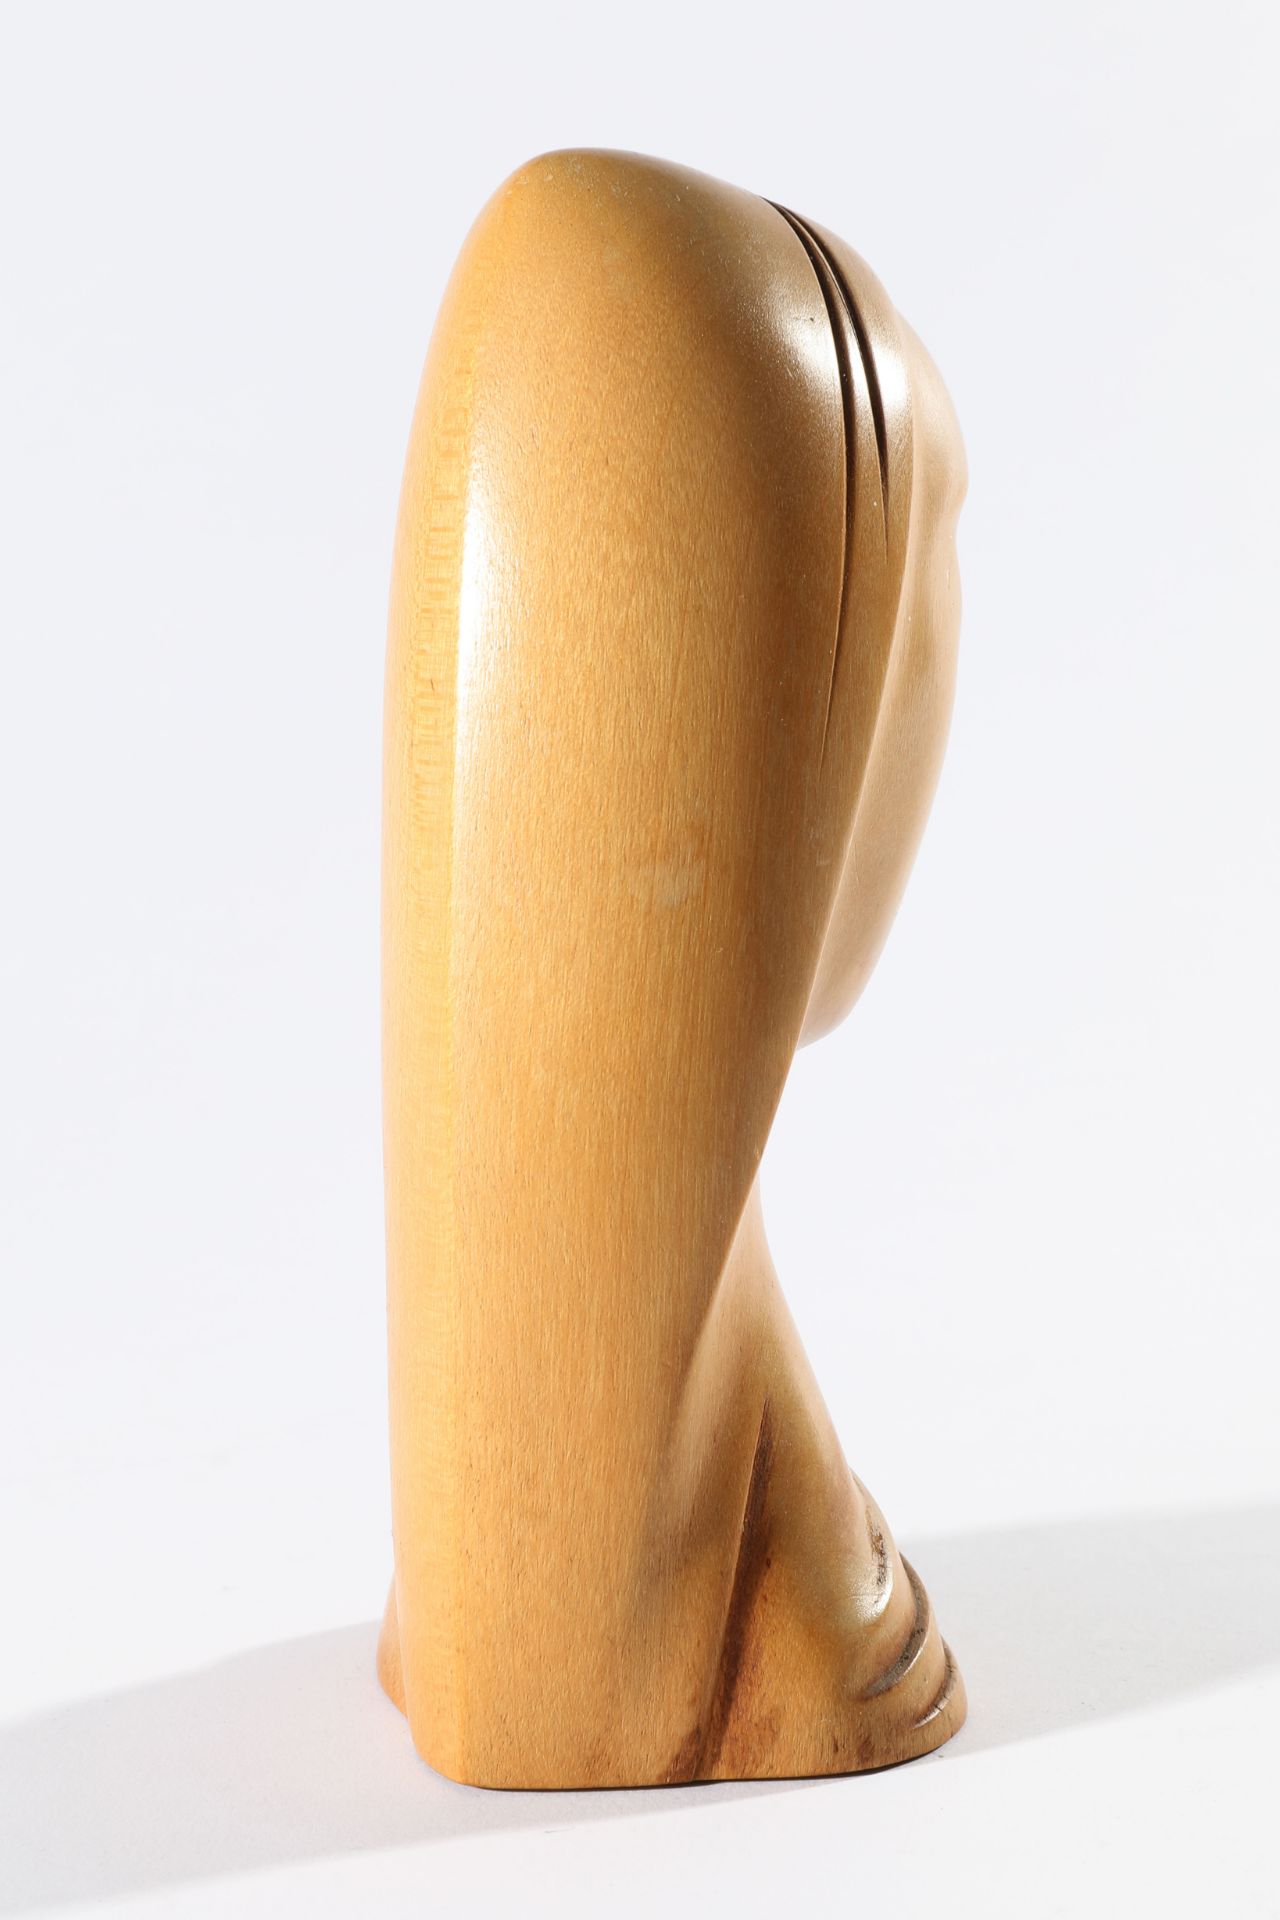 Hagenauer Wien, Female Head, Carved wood - Bild 3 aus 4